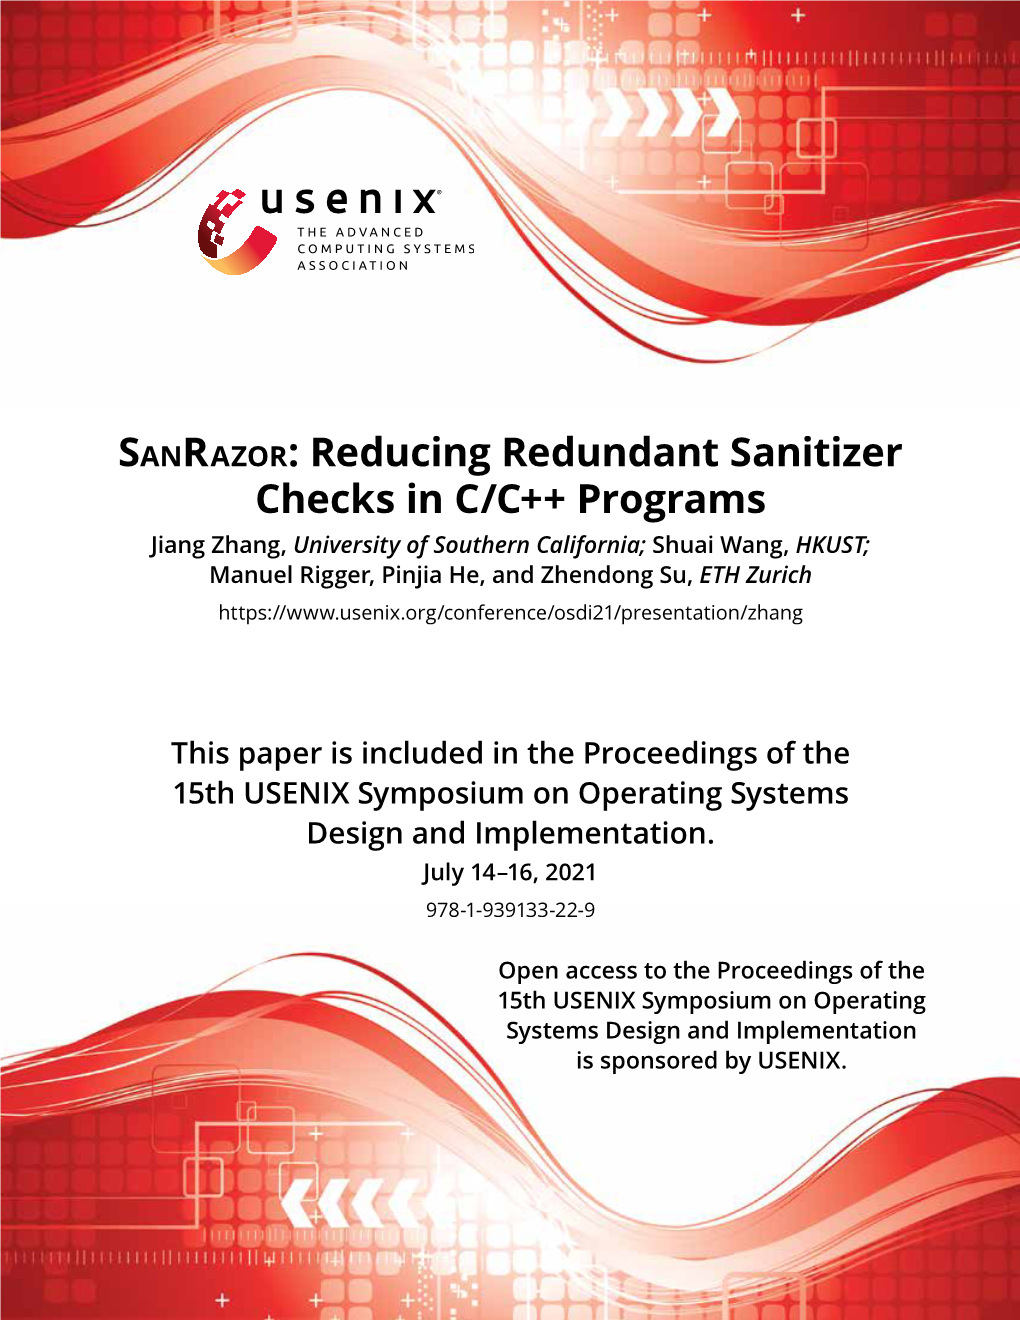 Sanrazor: Reducing Redundant Sanitizer Checks in C/C++ Programs